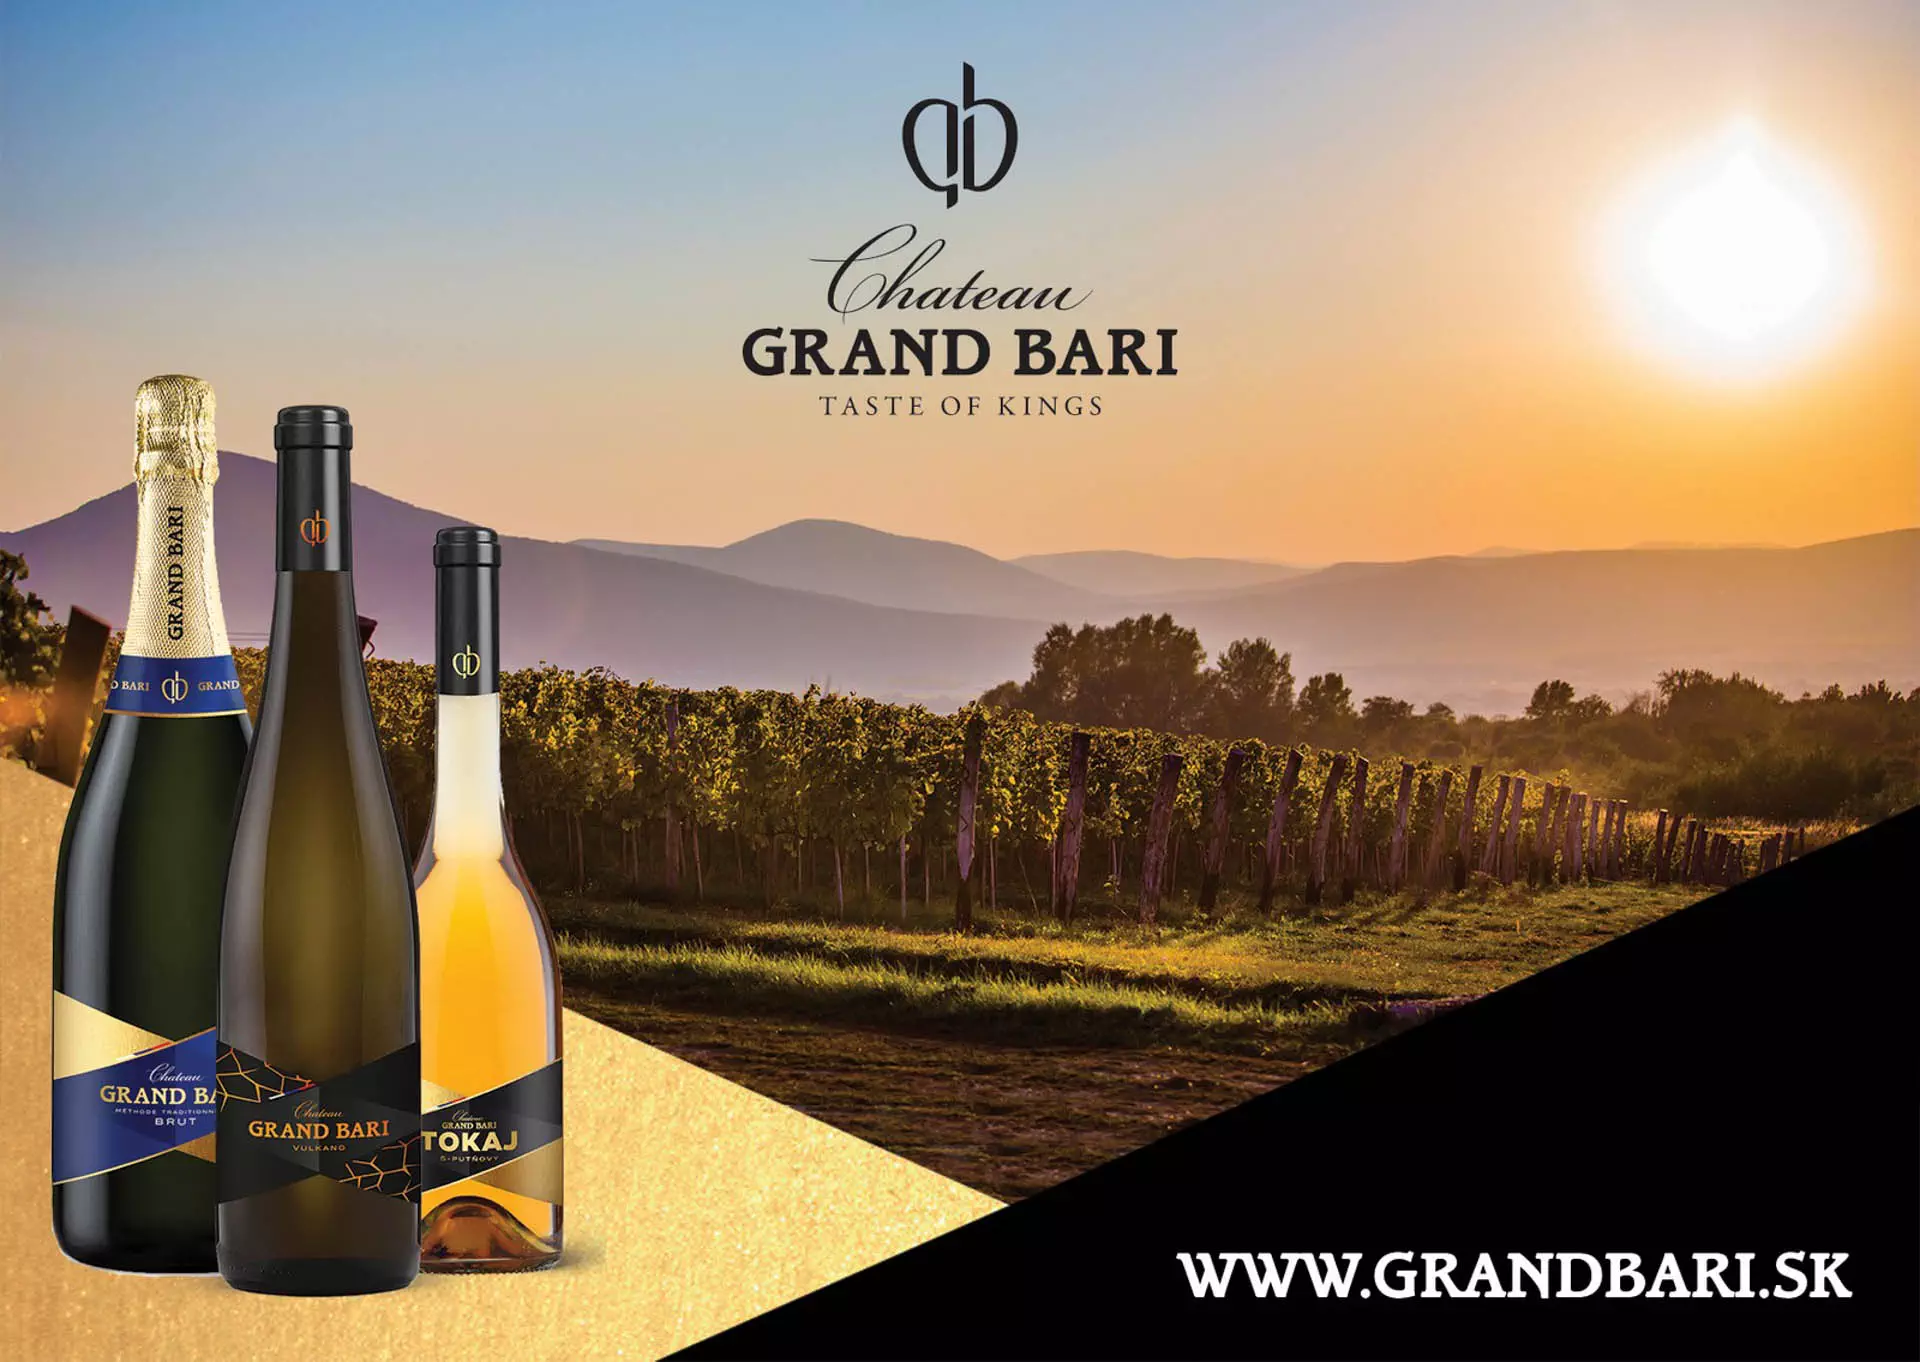 Fotenie viníc pre marketing Grand Bari